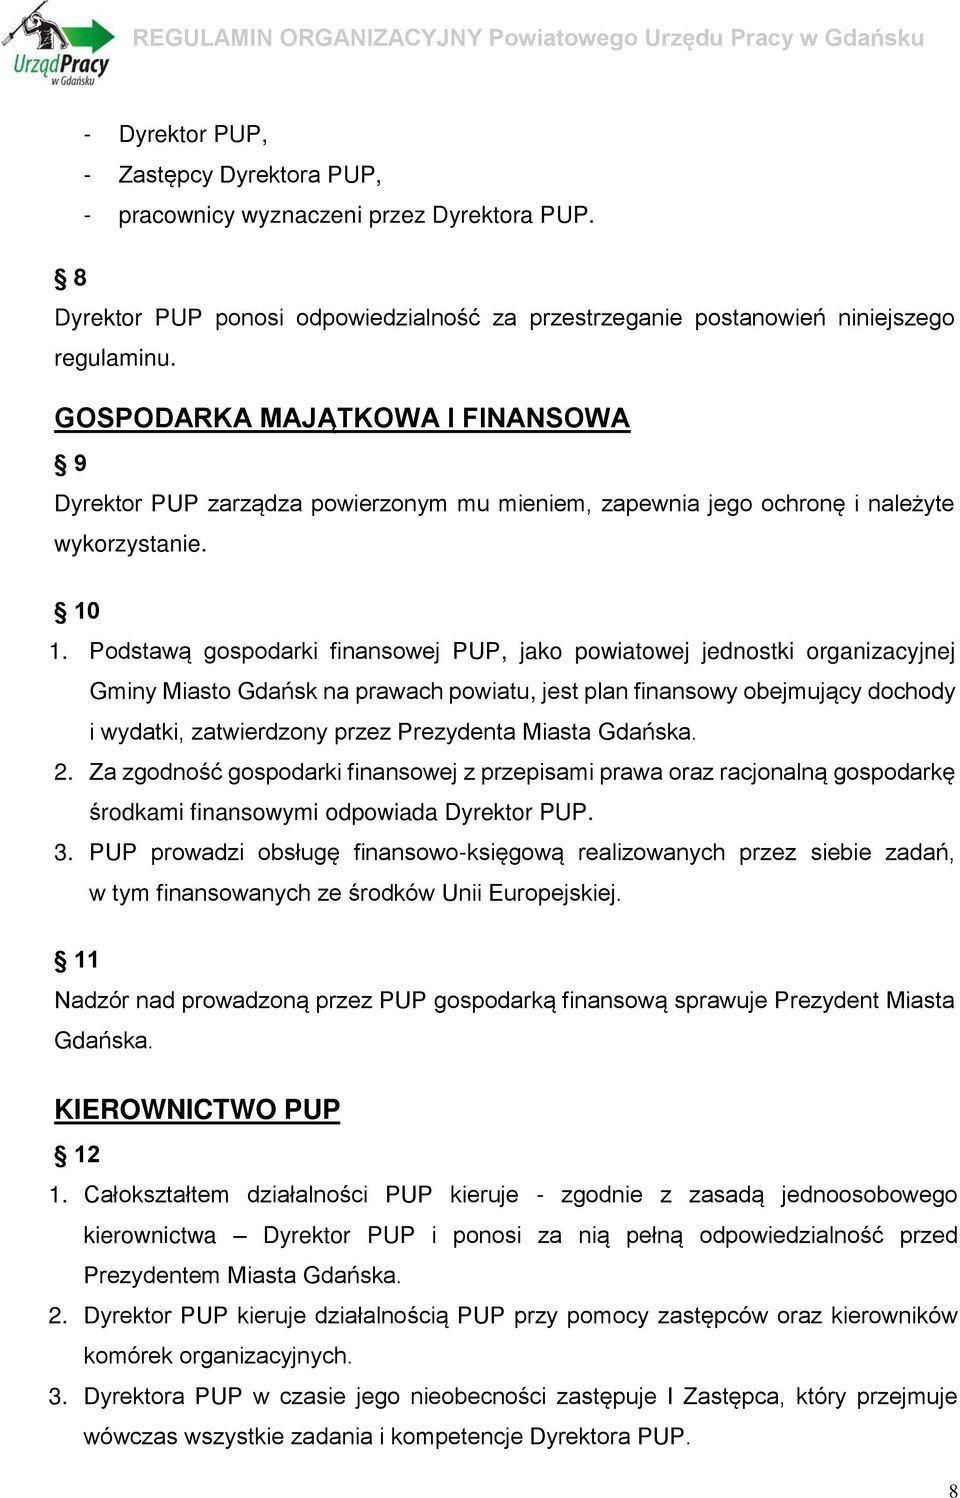 Podstawą gospodarki finansowej PUP, jako powiatowej jednostki organizacyjnej Gminy Miasto Gdańsk na prawach powiatu, jest plan finansowy obejmujący dochody i wydatki, zatwierdzony przez Prezydenta